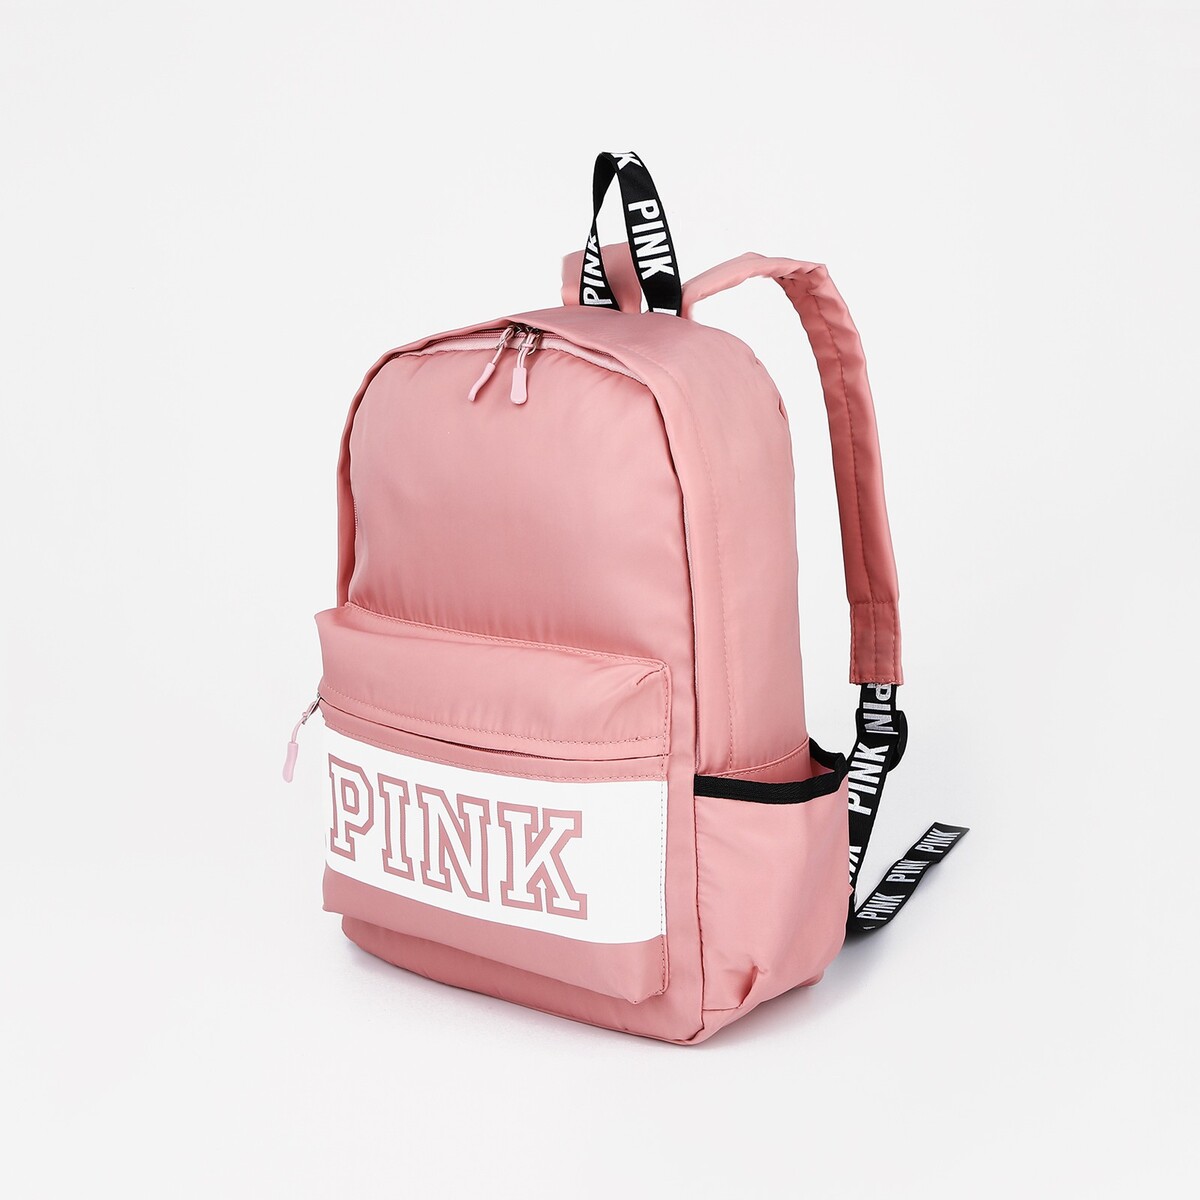 Рюкзак на молнии, наружный карман, 2 боковых кармана, цвет розовый рюкзак школьный на молнии из текстиля наружный карман белый розовый